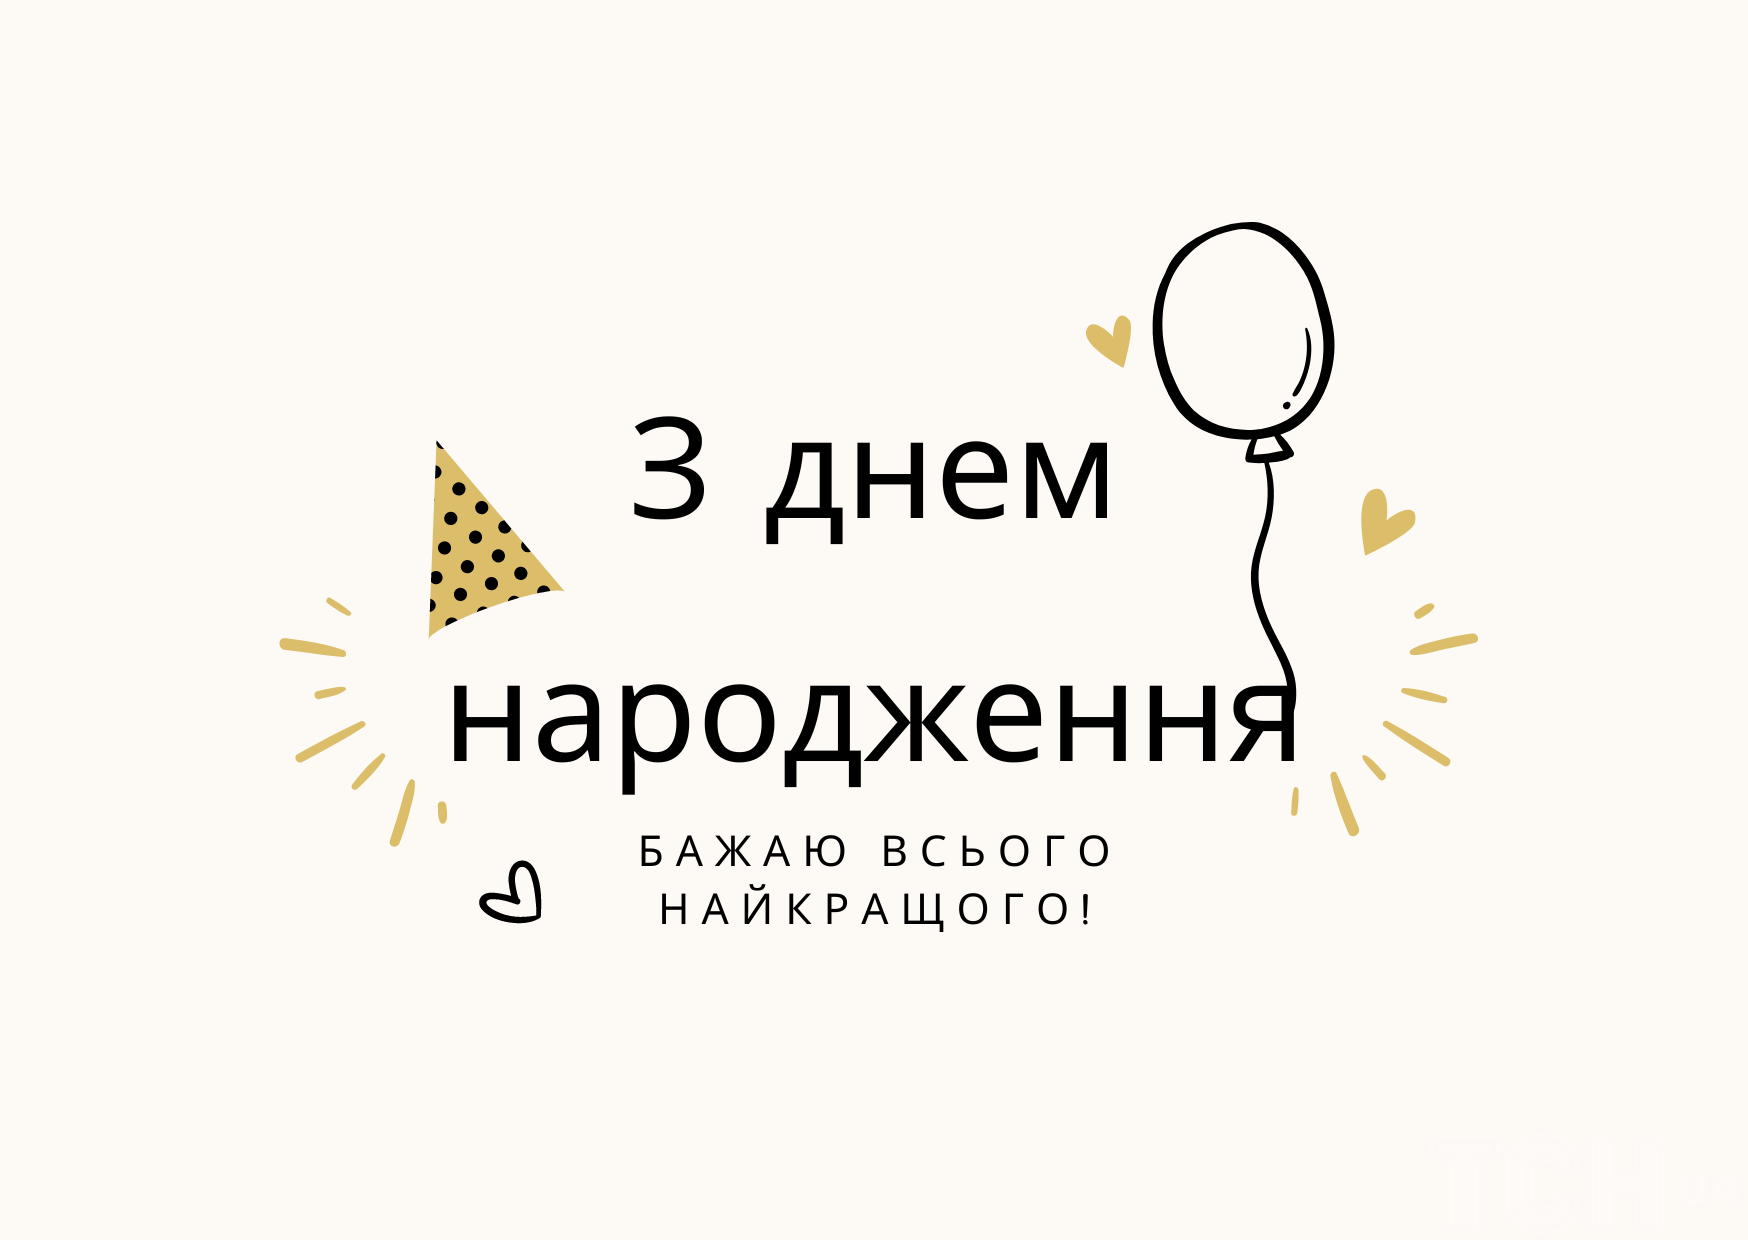 Поздравления с днем рождения: в стихах, прозе и картинках для мужчин и женщин — Украина — tsn.ua